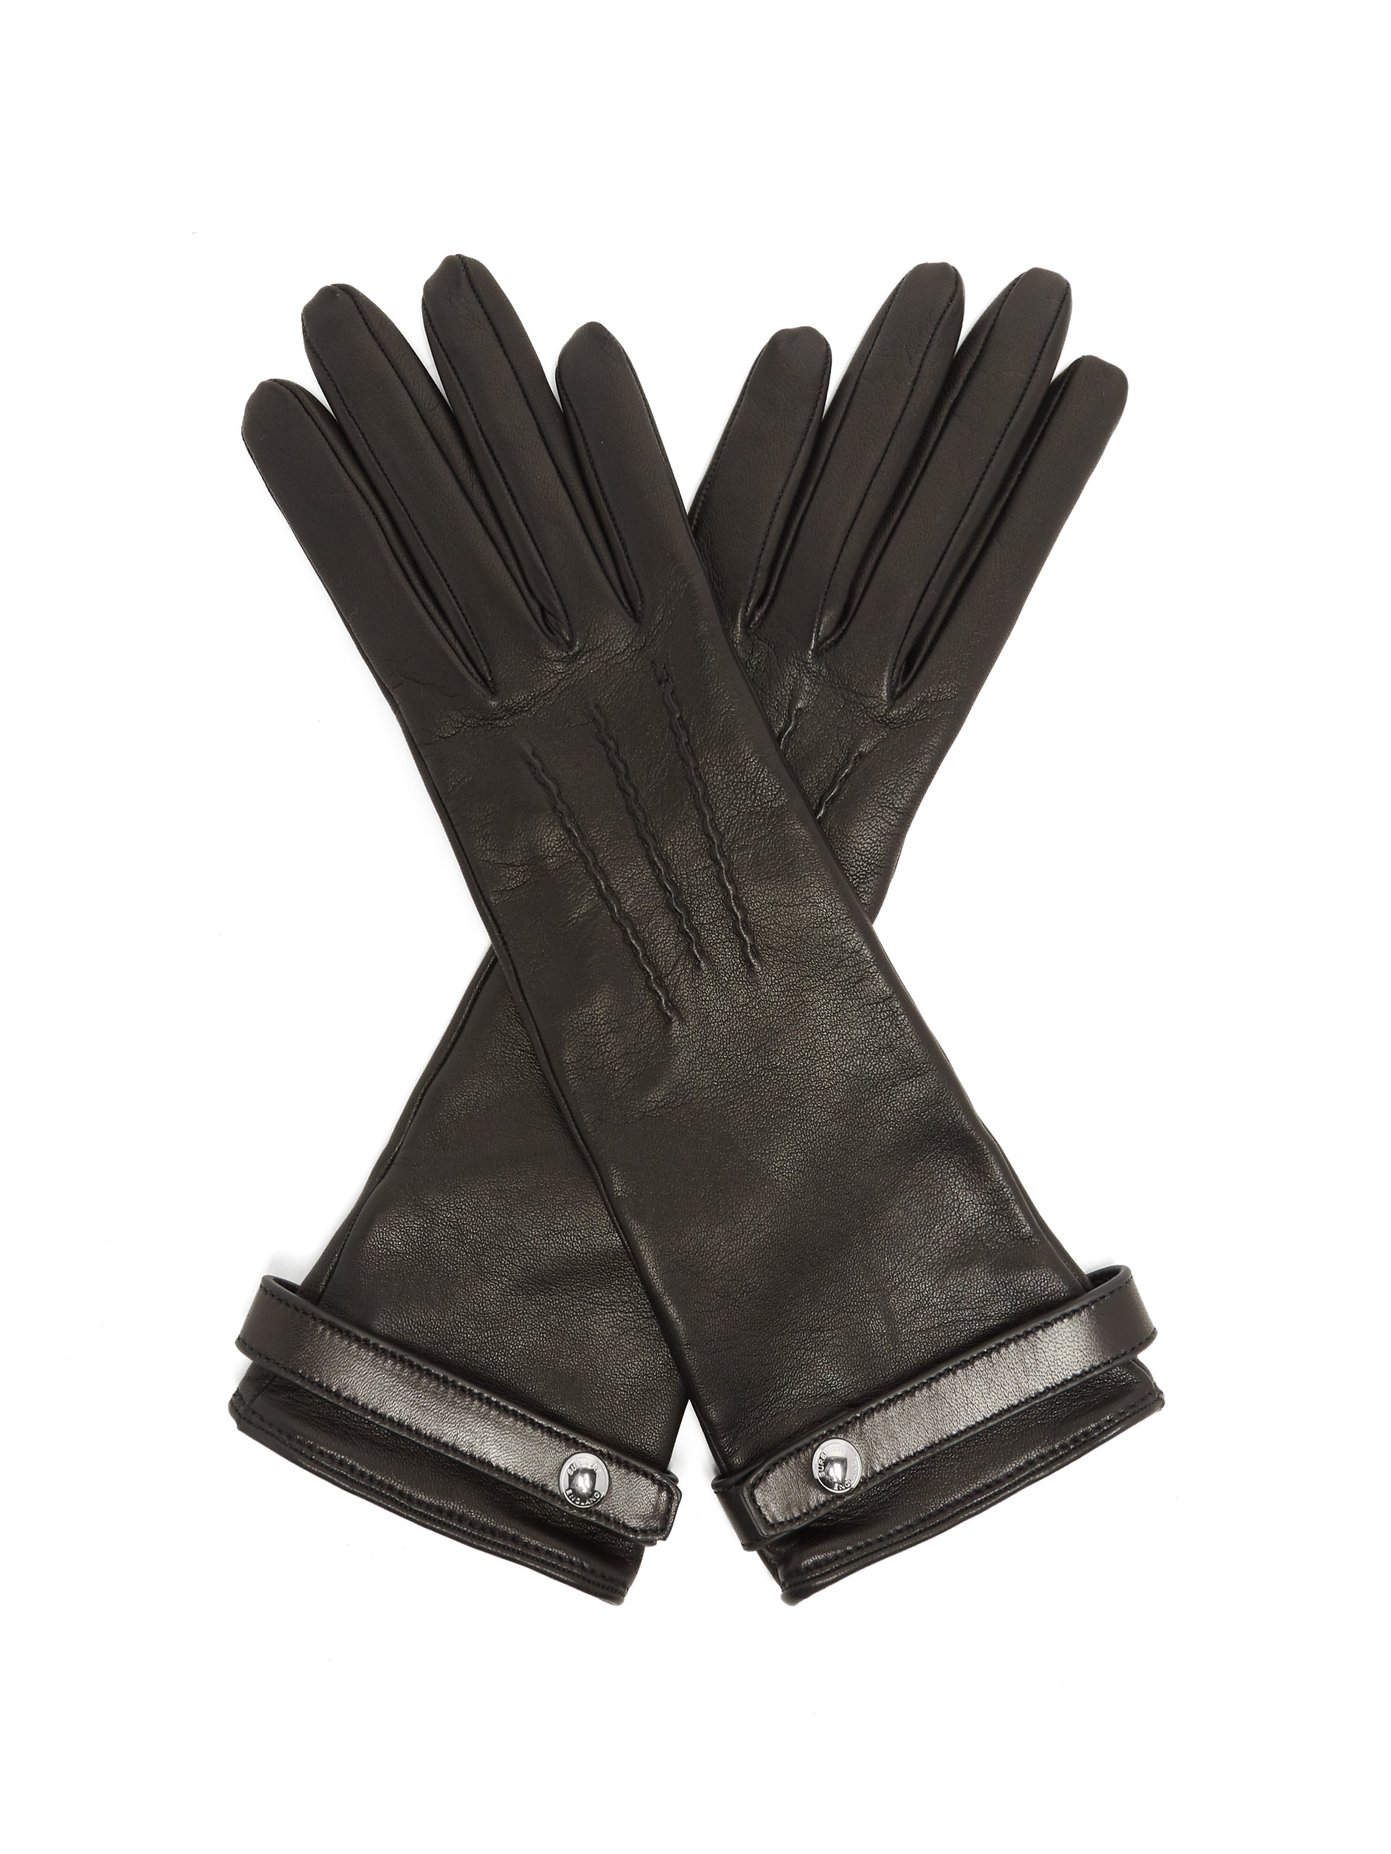 burberry gloves uk